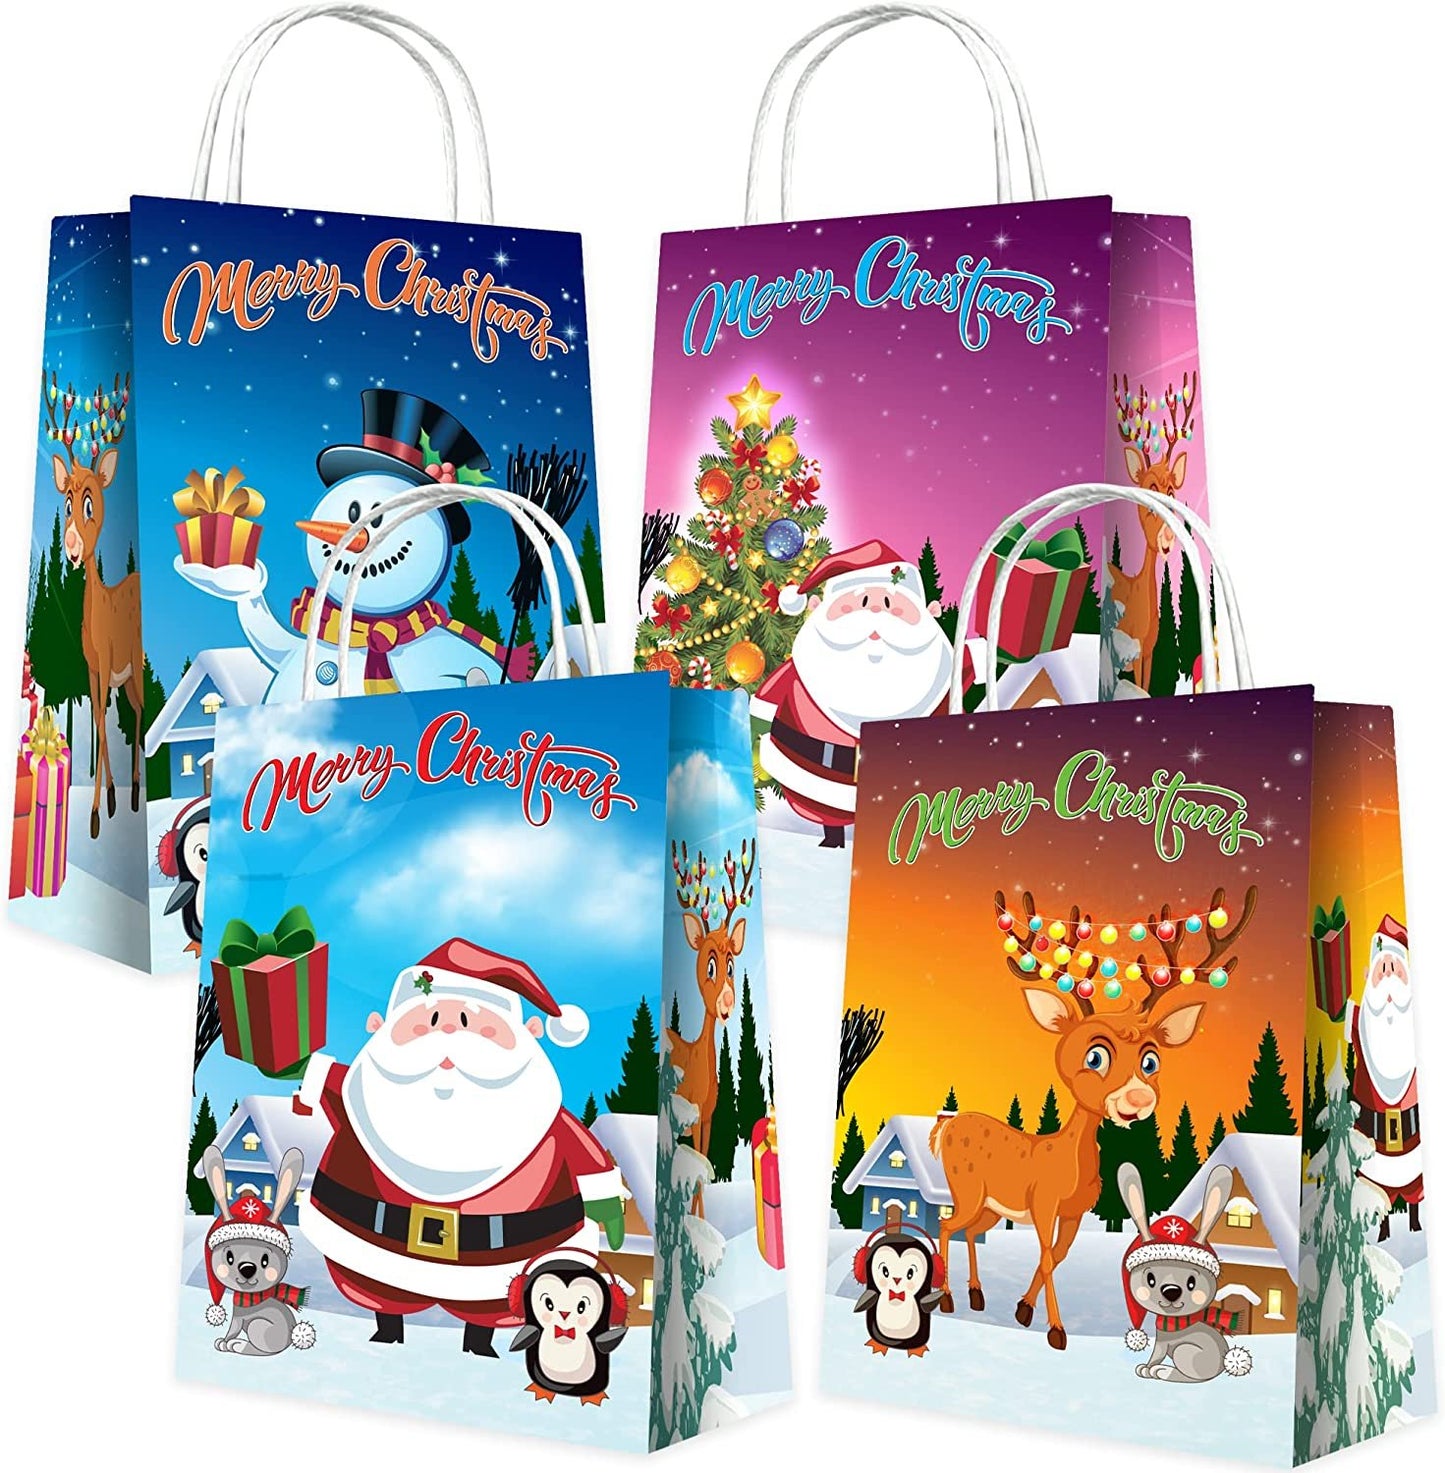 Designer Crossbody Bags as Christmas Present Idea